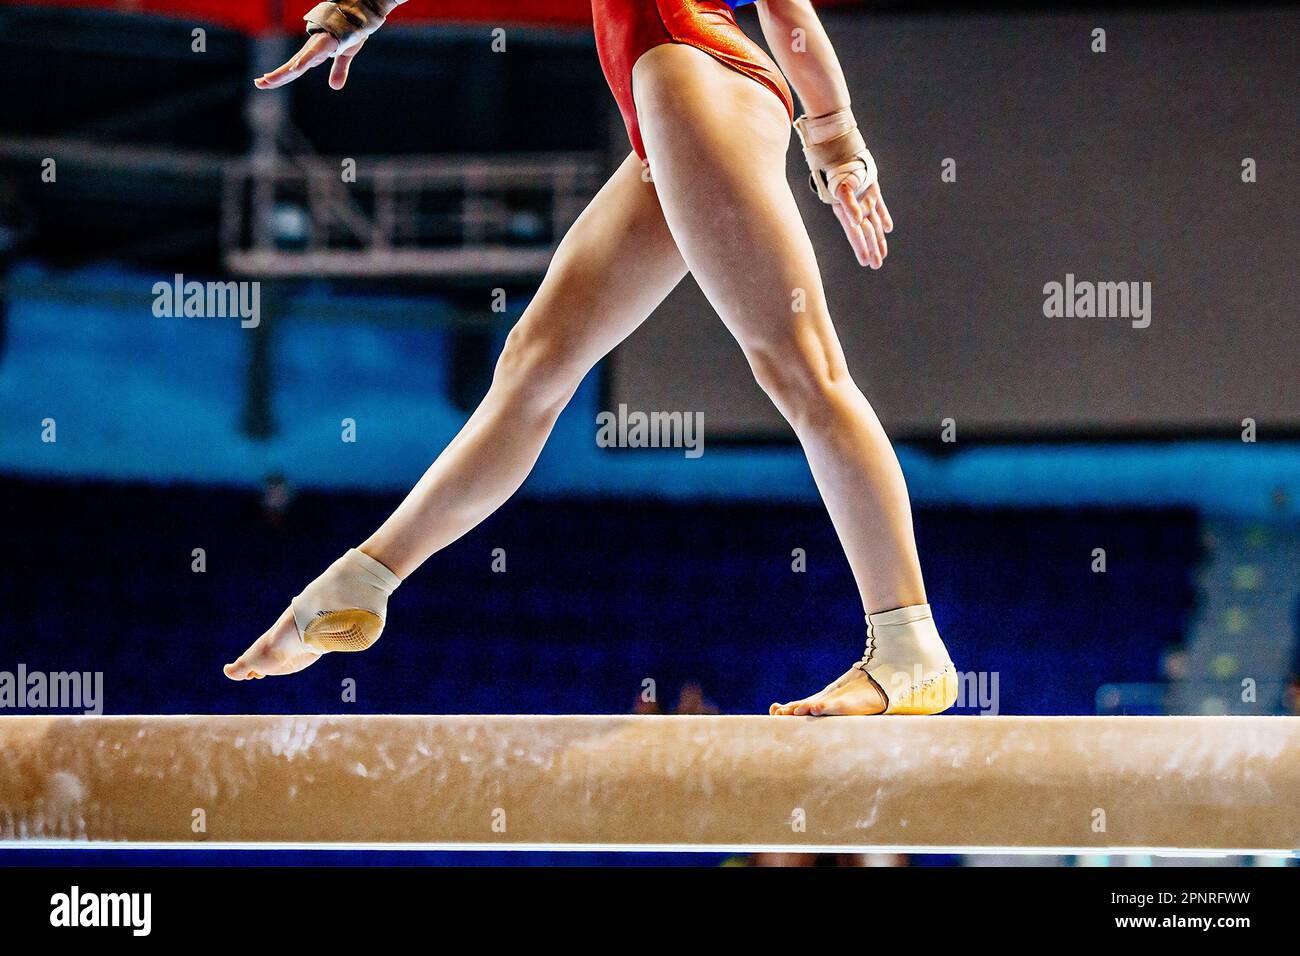 piernas gimnasta femenina paso en la viga de equilibrio en gimnasia artística, deportes juegos de verano Foto de stock